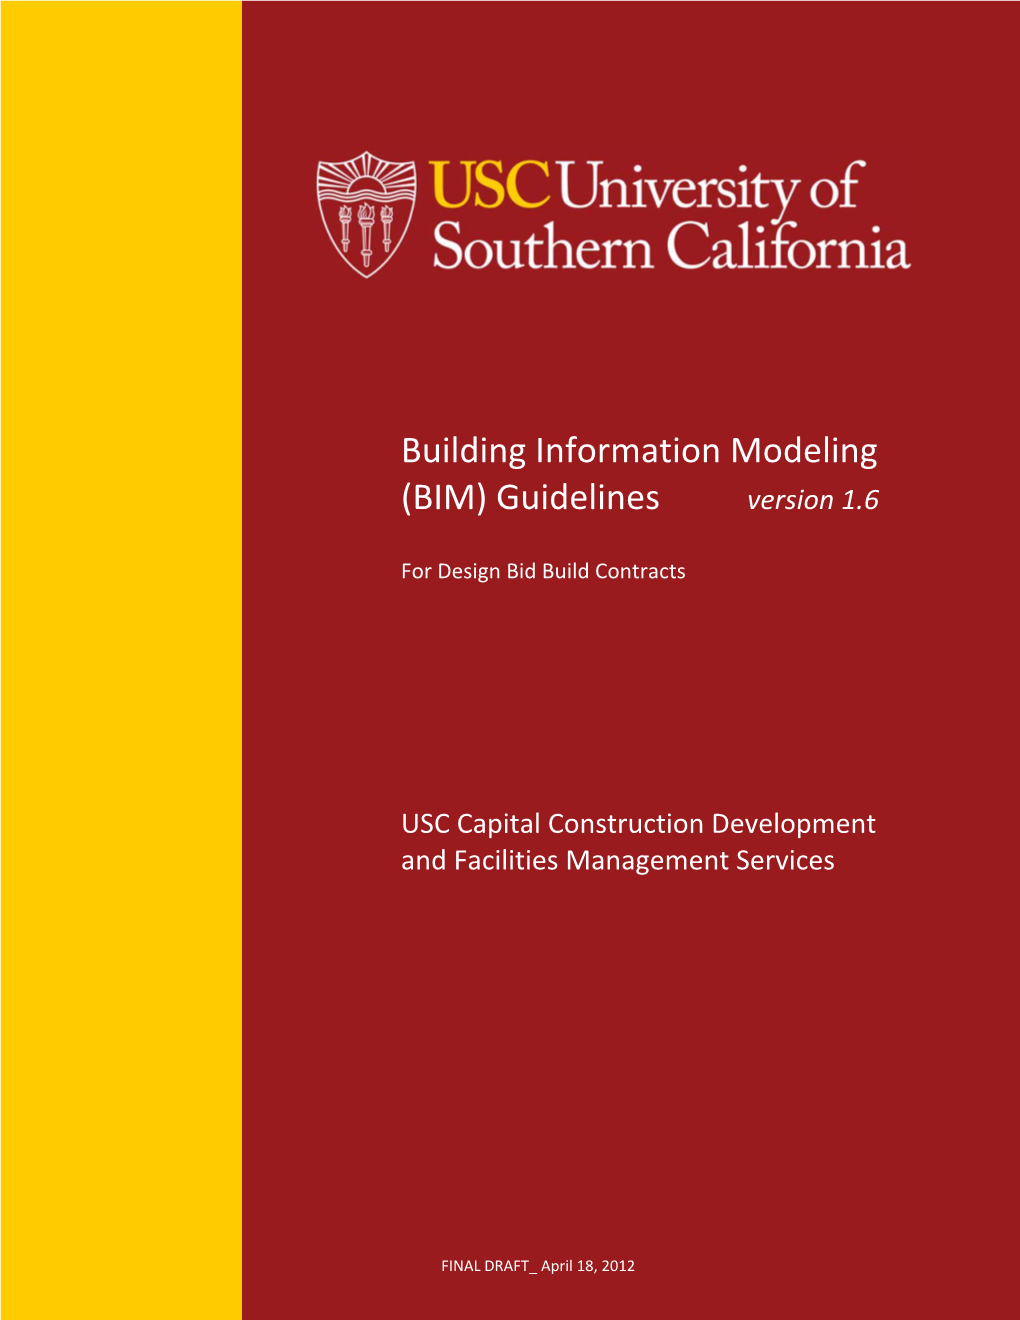 Building Information Modeling (BIM) Guidelines Version 1.6